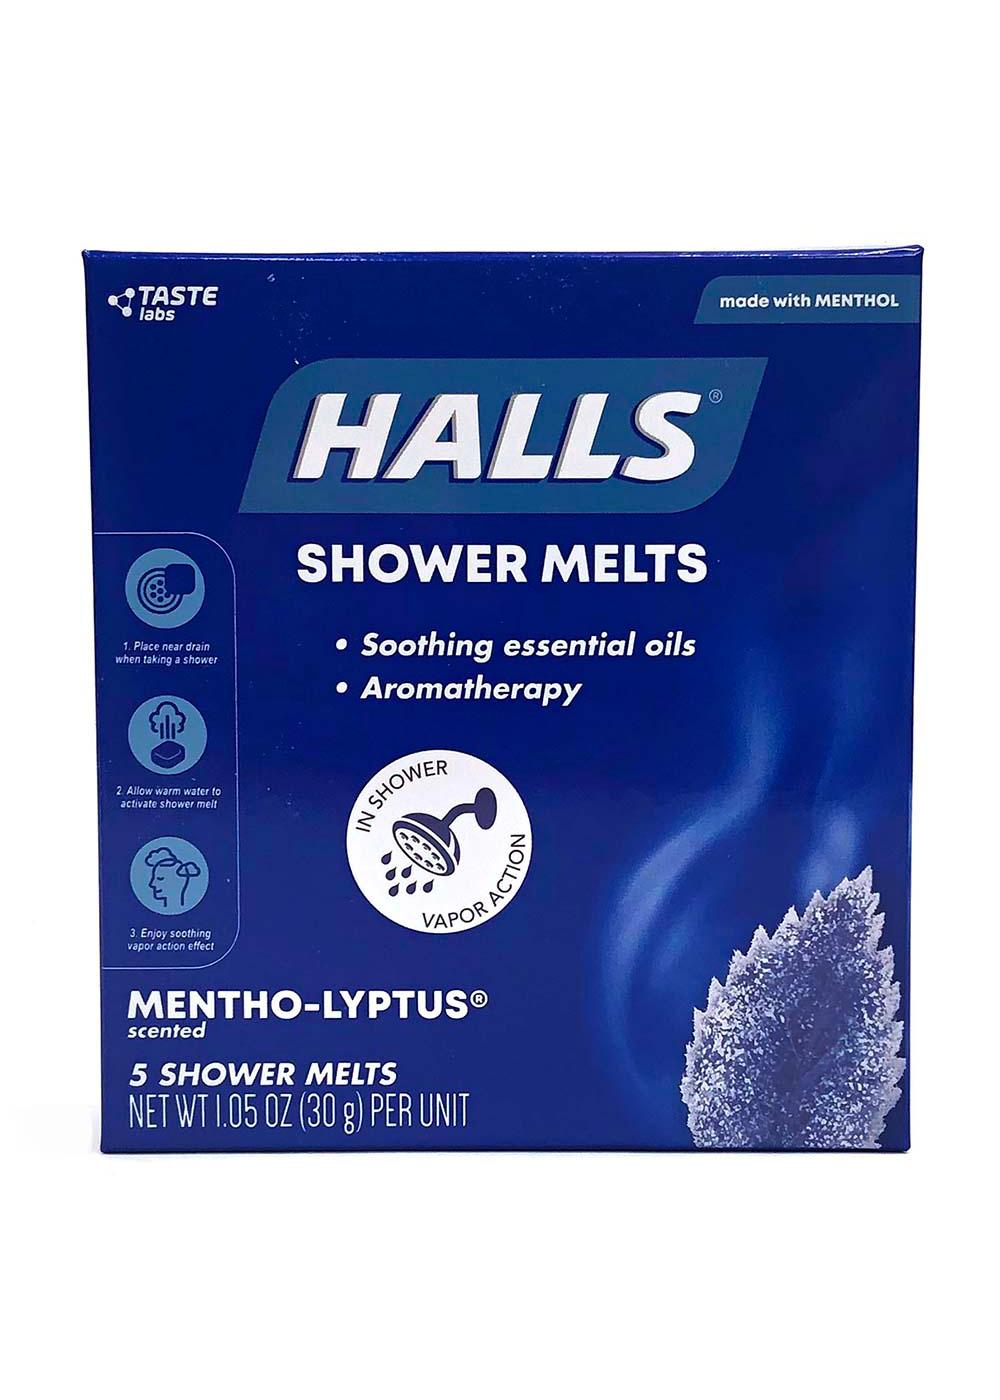 Halls  Shower Melts Mentho-lyptus; image 1 of 2